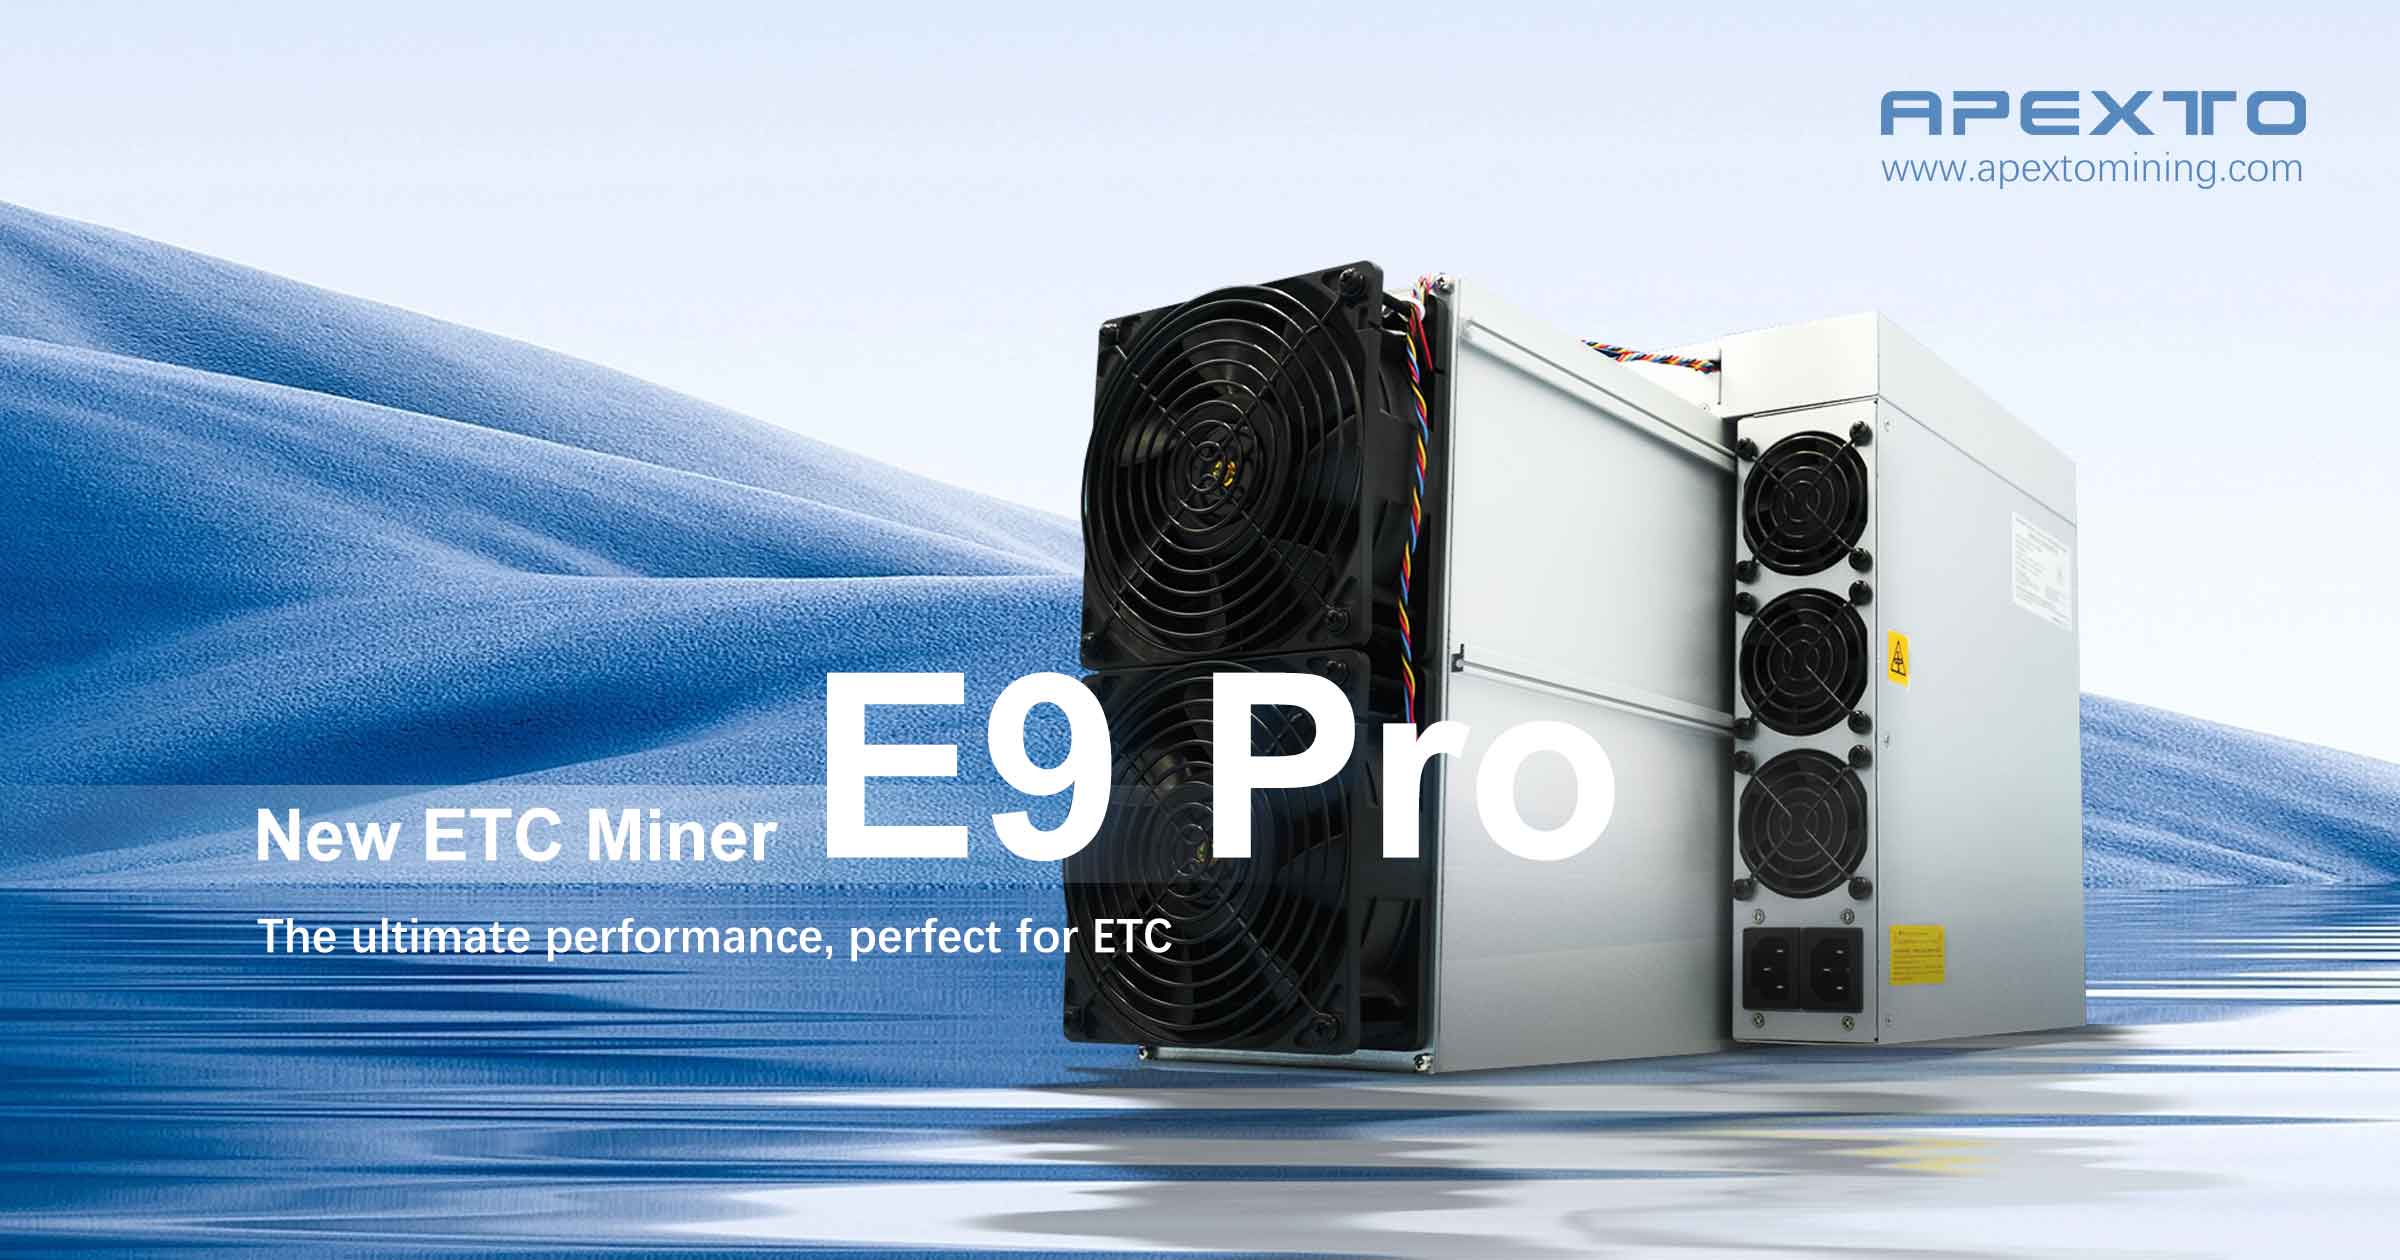 Bitmain heeft zojuist de meest winstgevende Ethereum Classic Miner uitgebracht!De Antminer E9 Pro ETC-mijnwerker